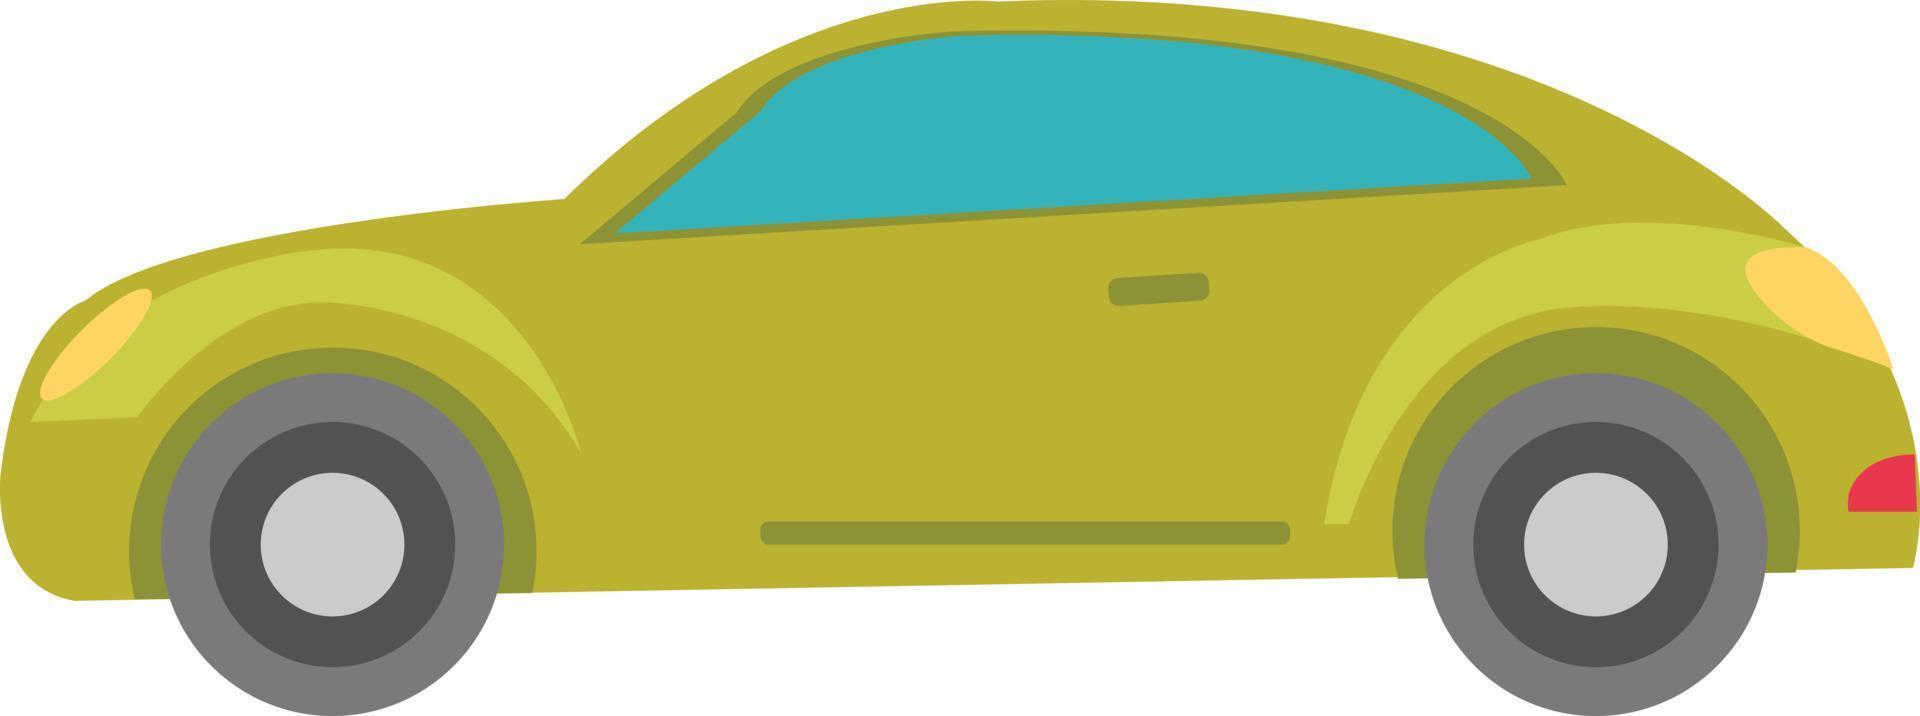 voiture et taxi pour l'animation de dessin animé 2d. voiture verte simple. vecteur